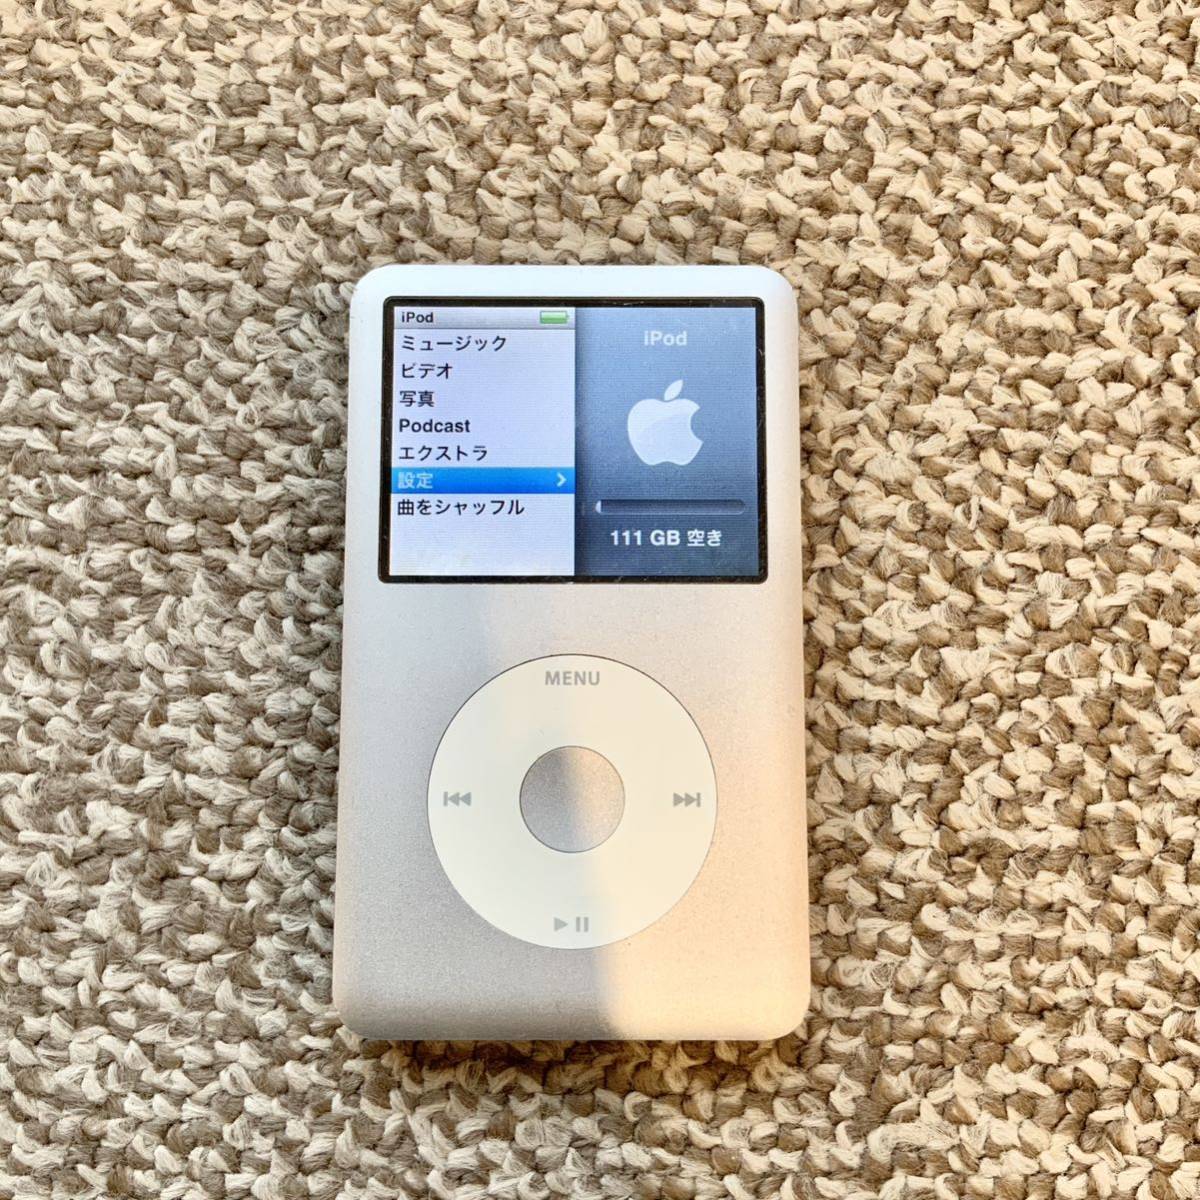 【送料無料】iPod classic 120GB A1238 Apple アップル アイポッドクラシック MB562J/A 本体_画像2